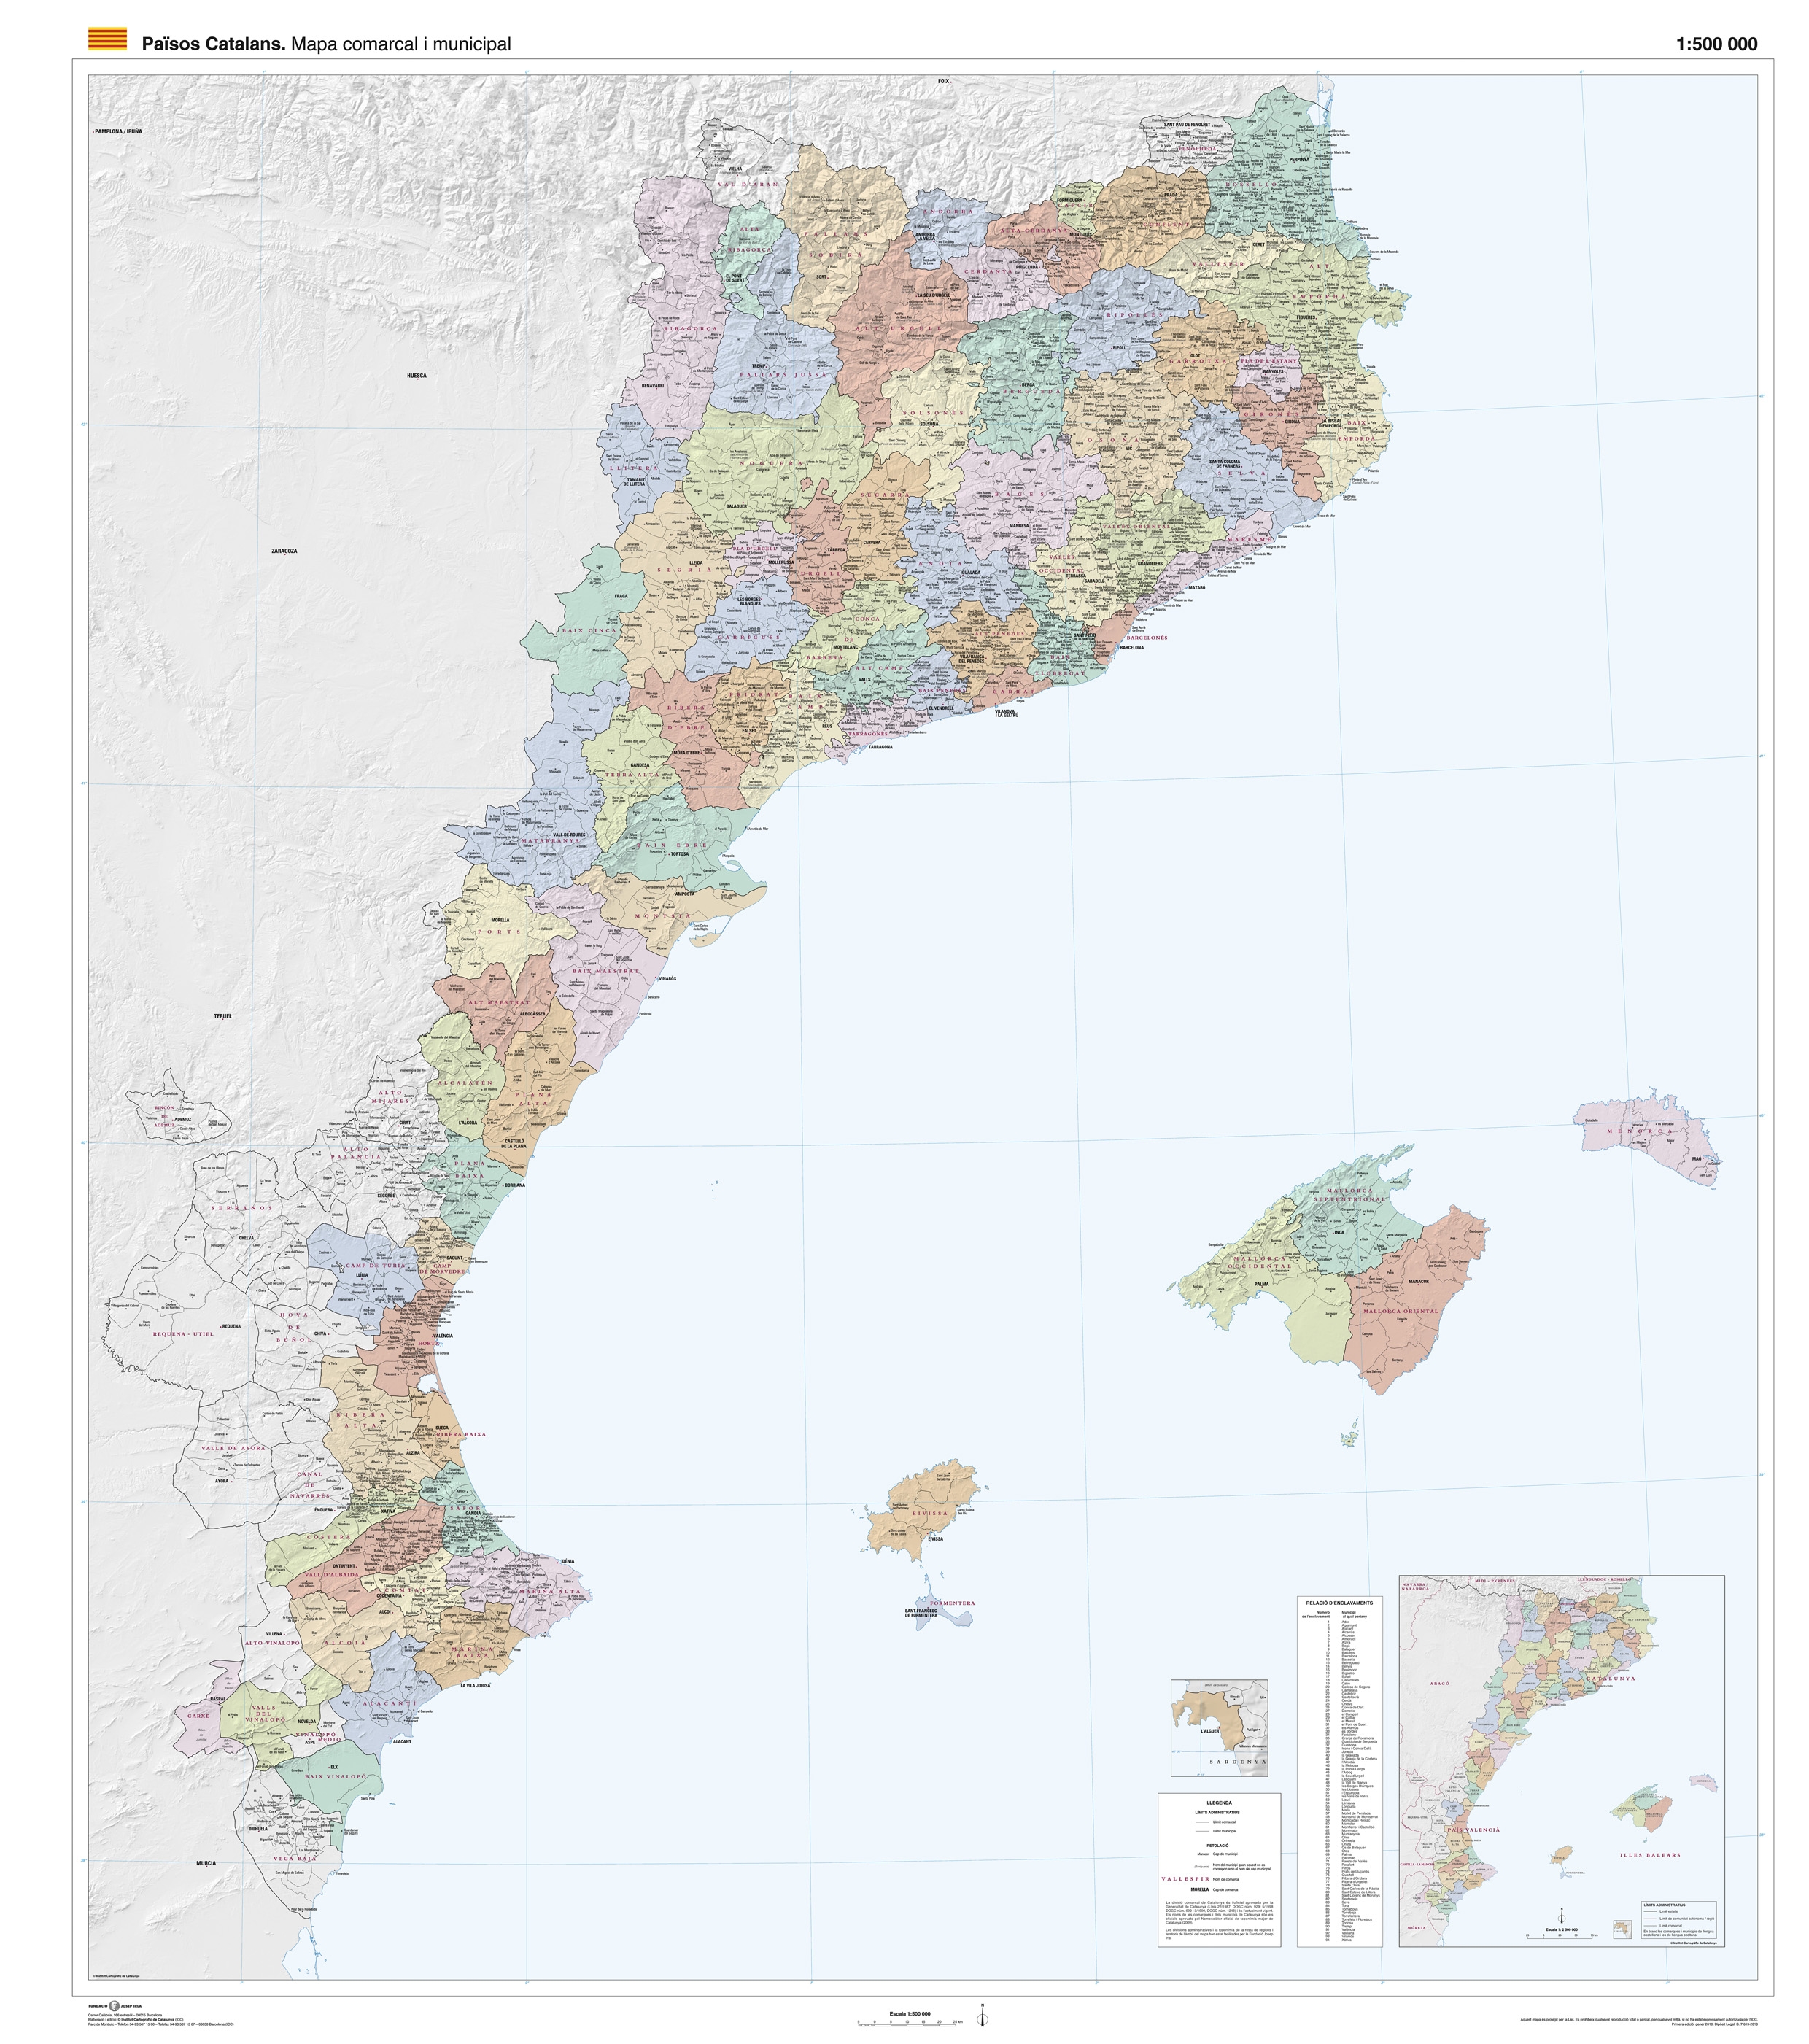 mapa-politic-dels-paisos-catalans-comarques-i-poblacions-gran